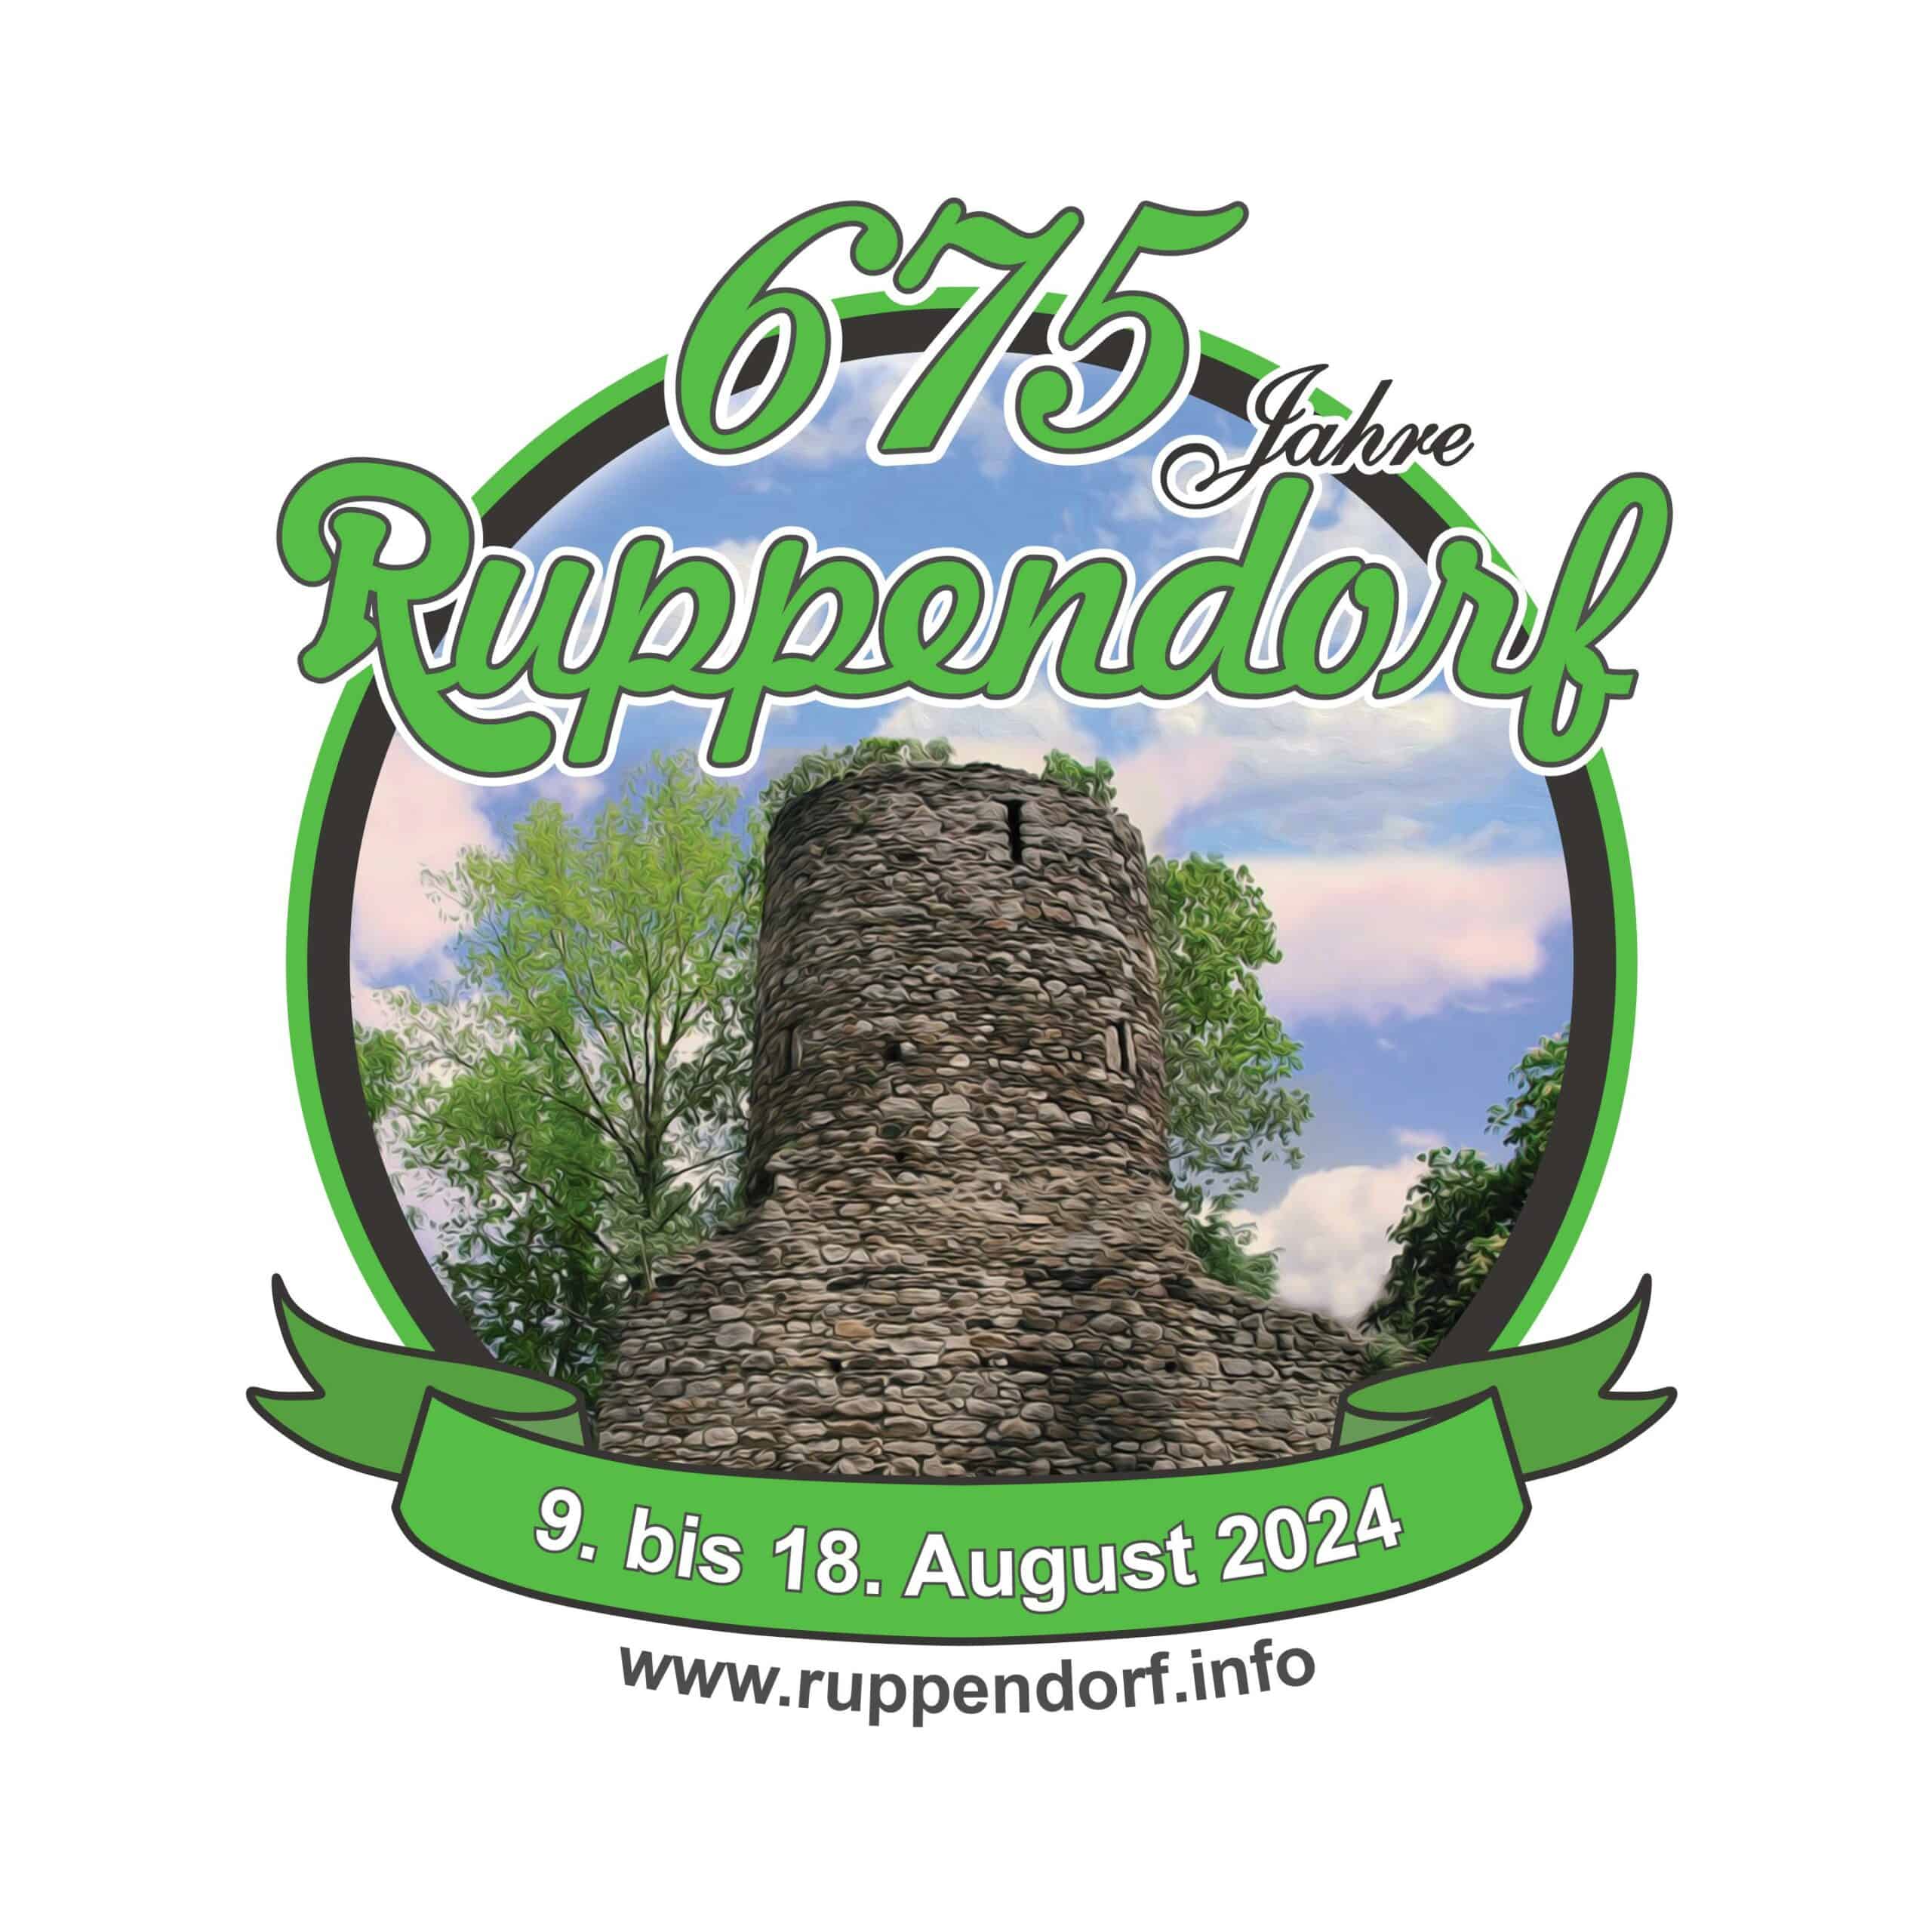 Ruppendorf